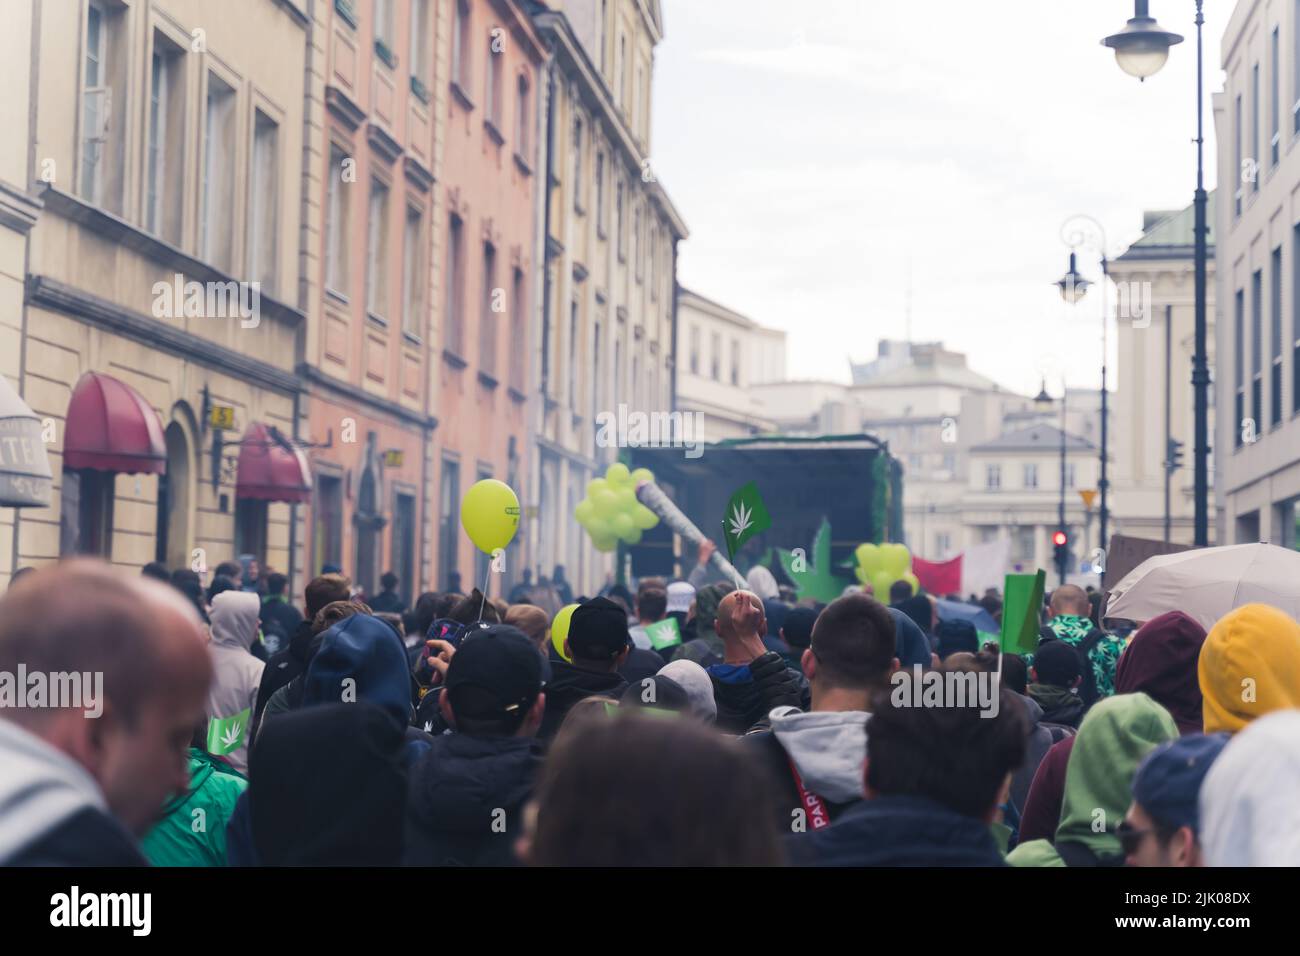 05.28.2022 Varsovie, Pologne Un rassemblement des Européens lors d'une des nombreuses marches pro-marijuana. Prise de vue en extérieur. Concept légal de cannabis récréatif. Photo de haute qualité Banque D'Images